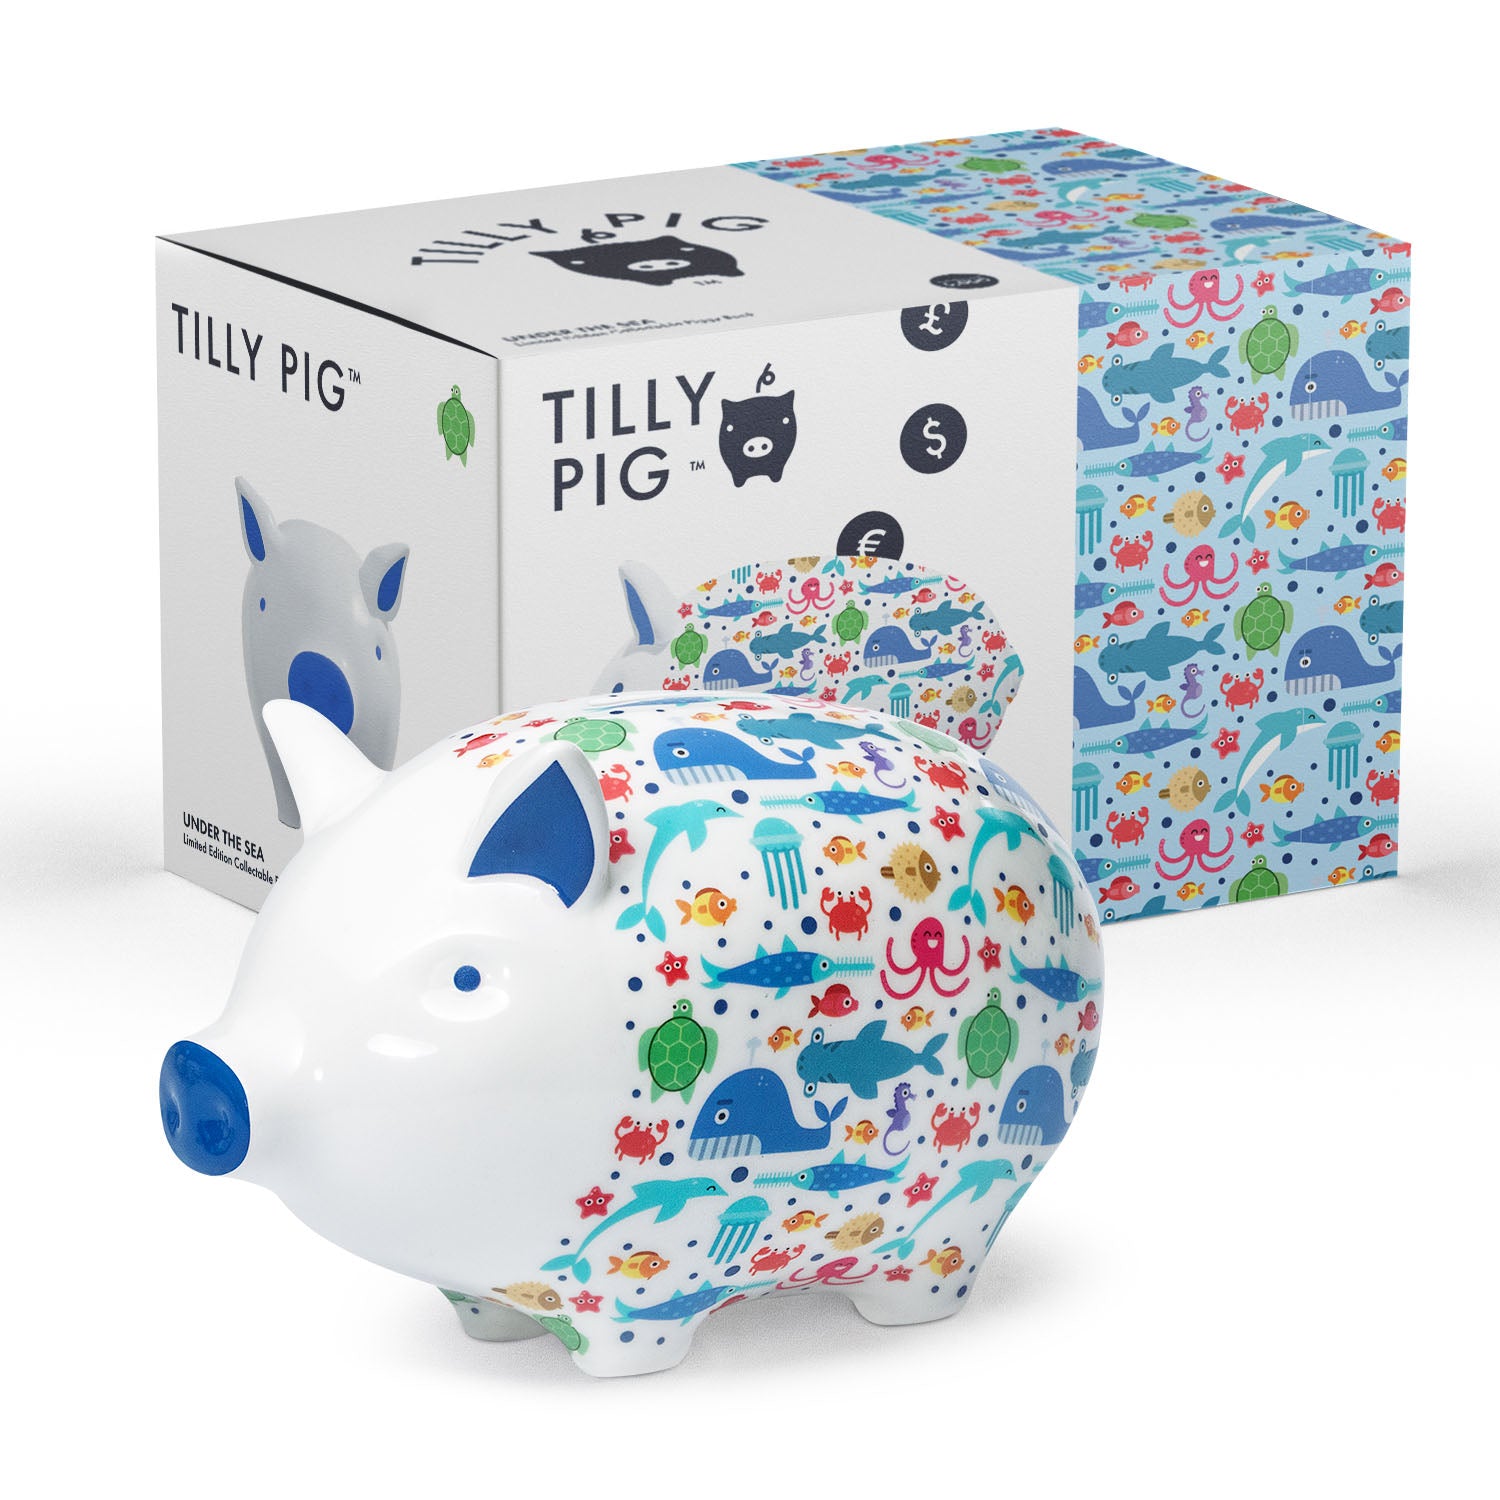 Tilly Pig - Under The Sea  Piggy Bank